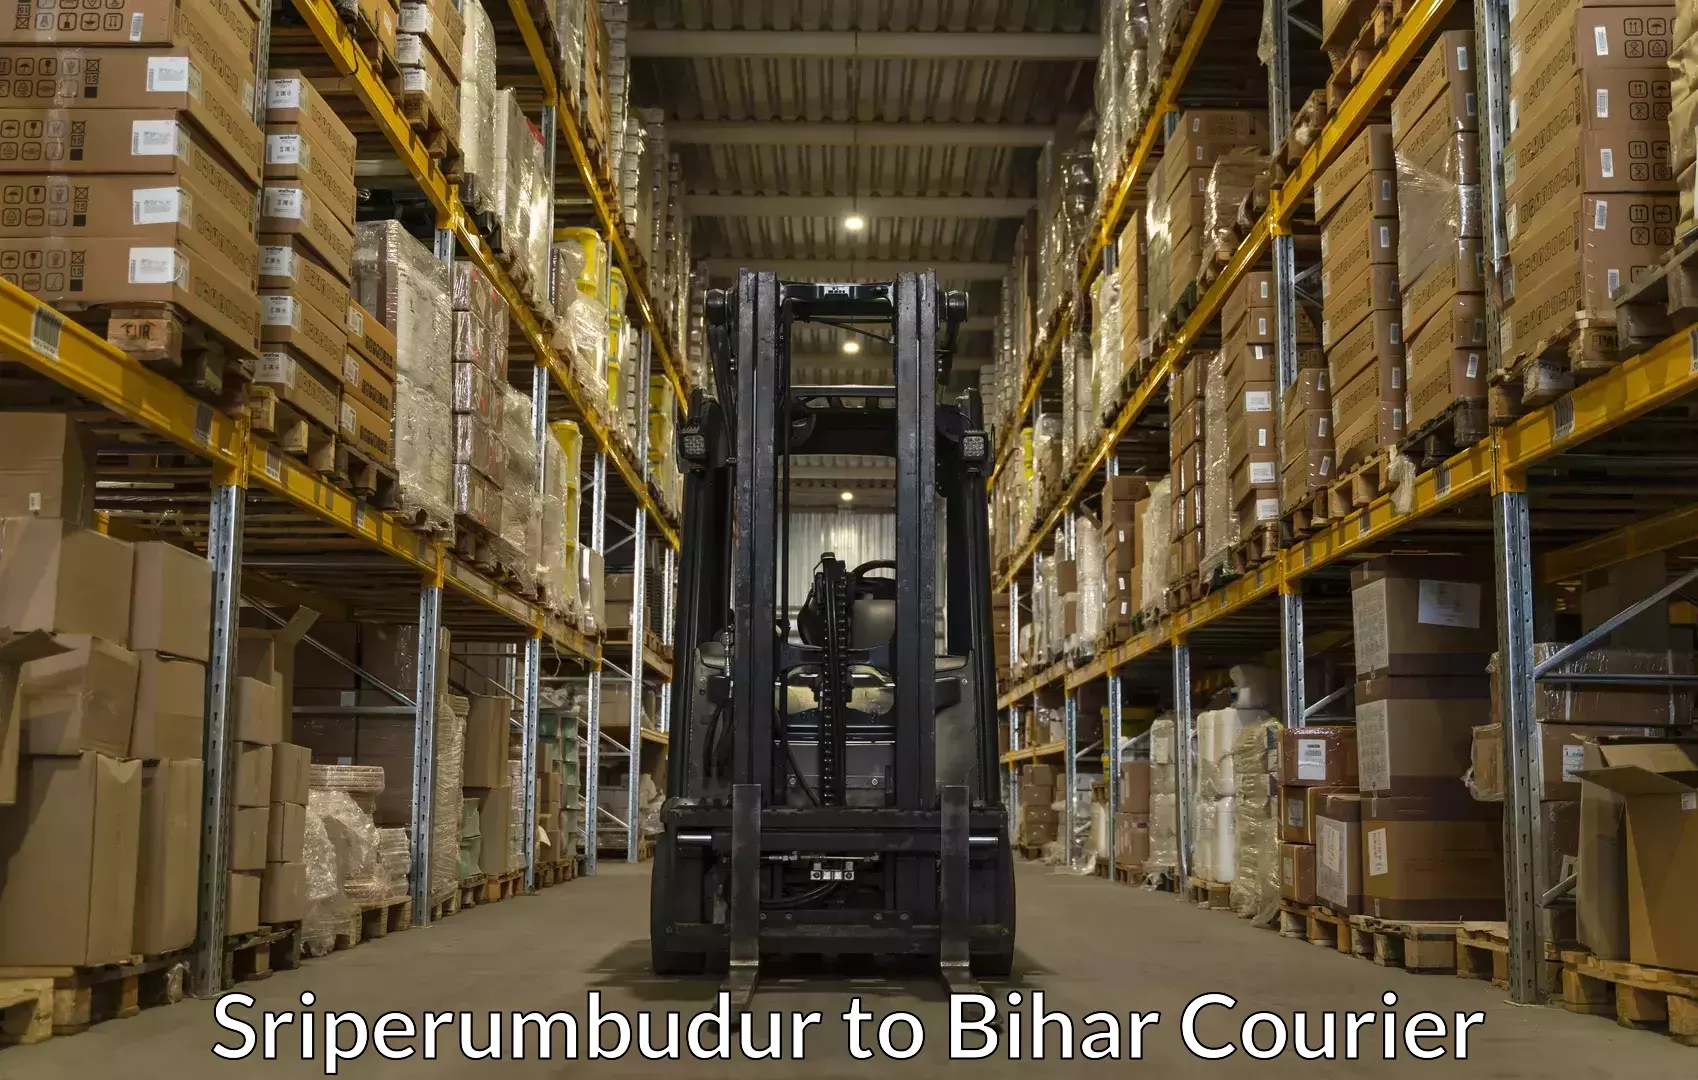 Baggage relocation service Sriperumbudur to Muzaffarpur